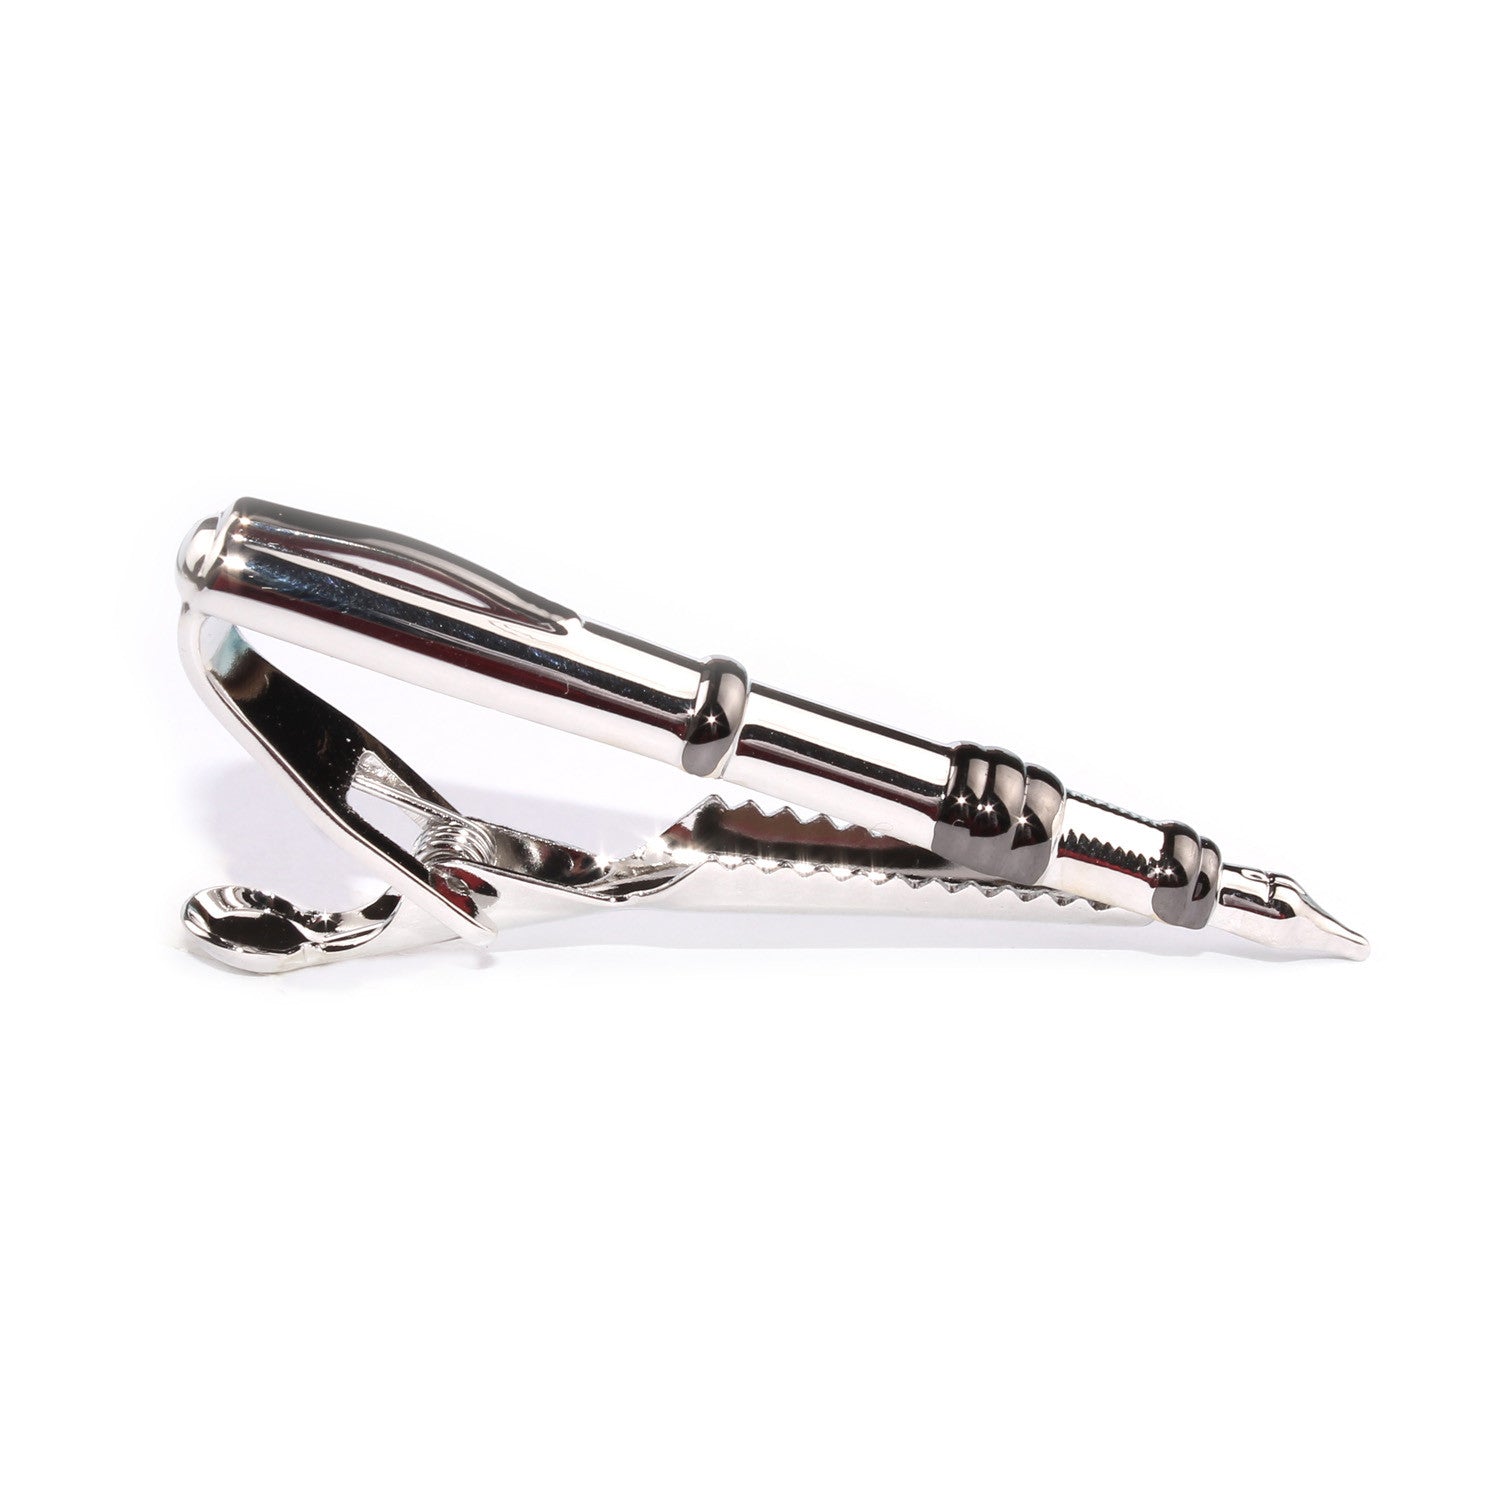 The Silver Fountain Pen Tie Bar